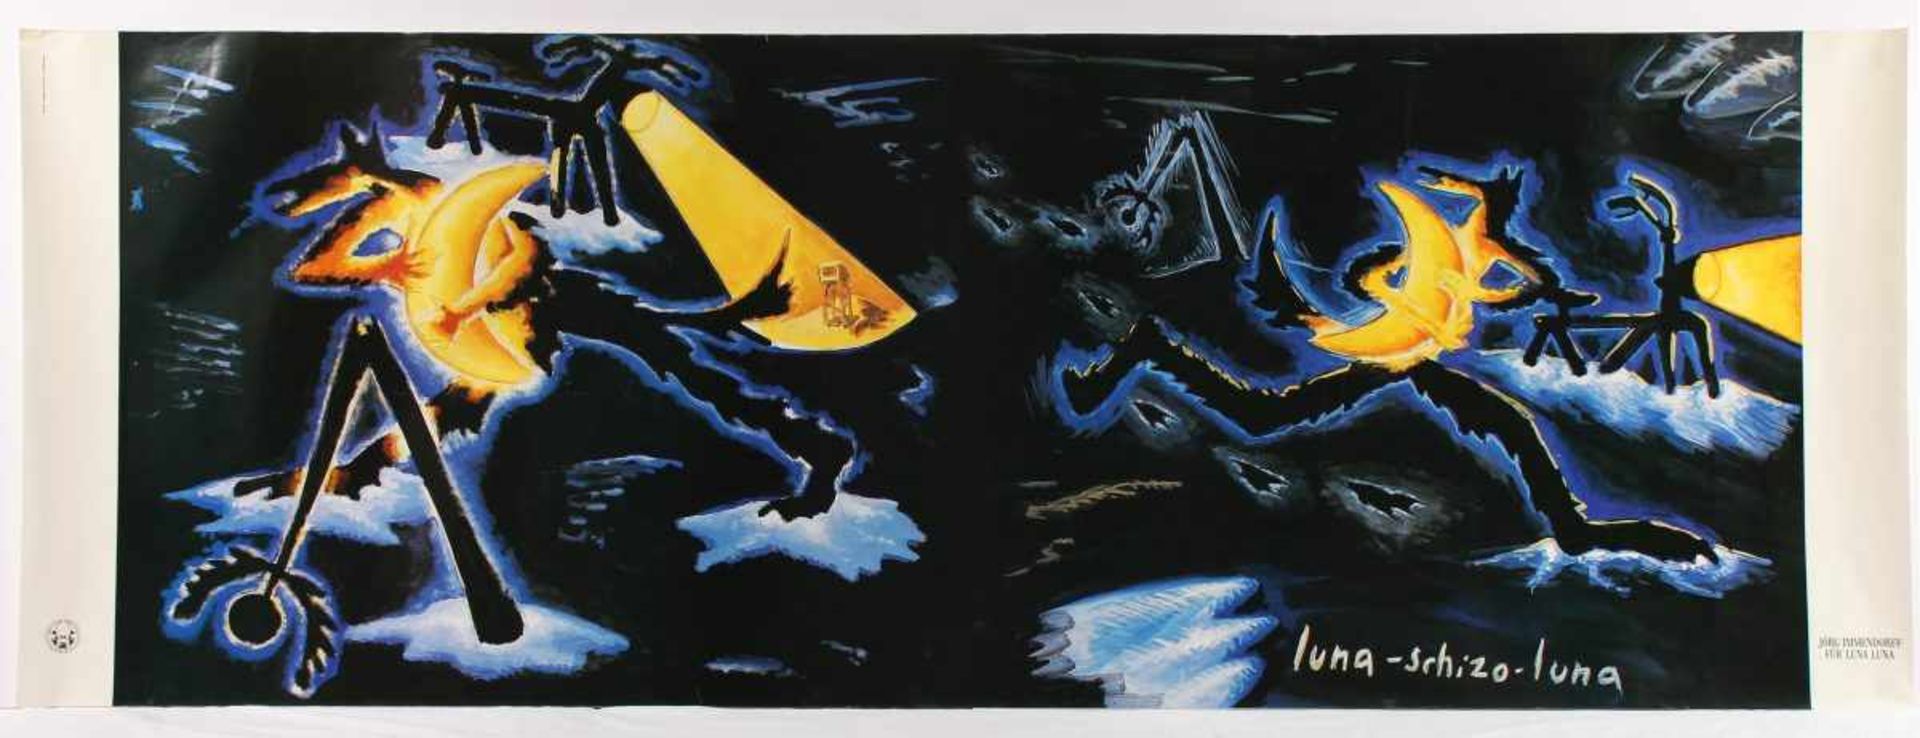 LICHTENSTEIN, Roy, Plakat "Yellow and green brushstrokes", Offset, 79 x 140, Universal Prints - Bild 2 aus 2